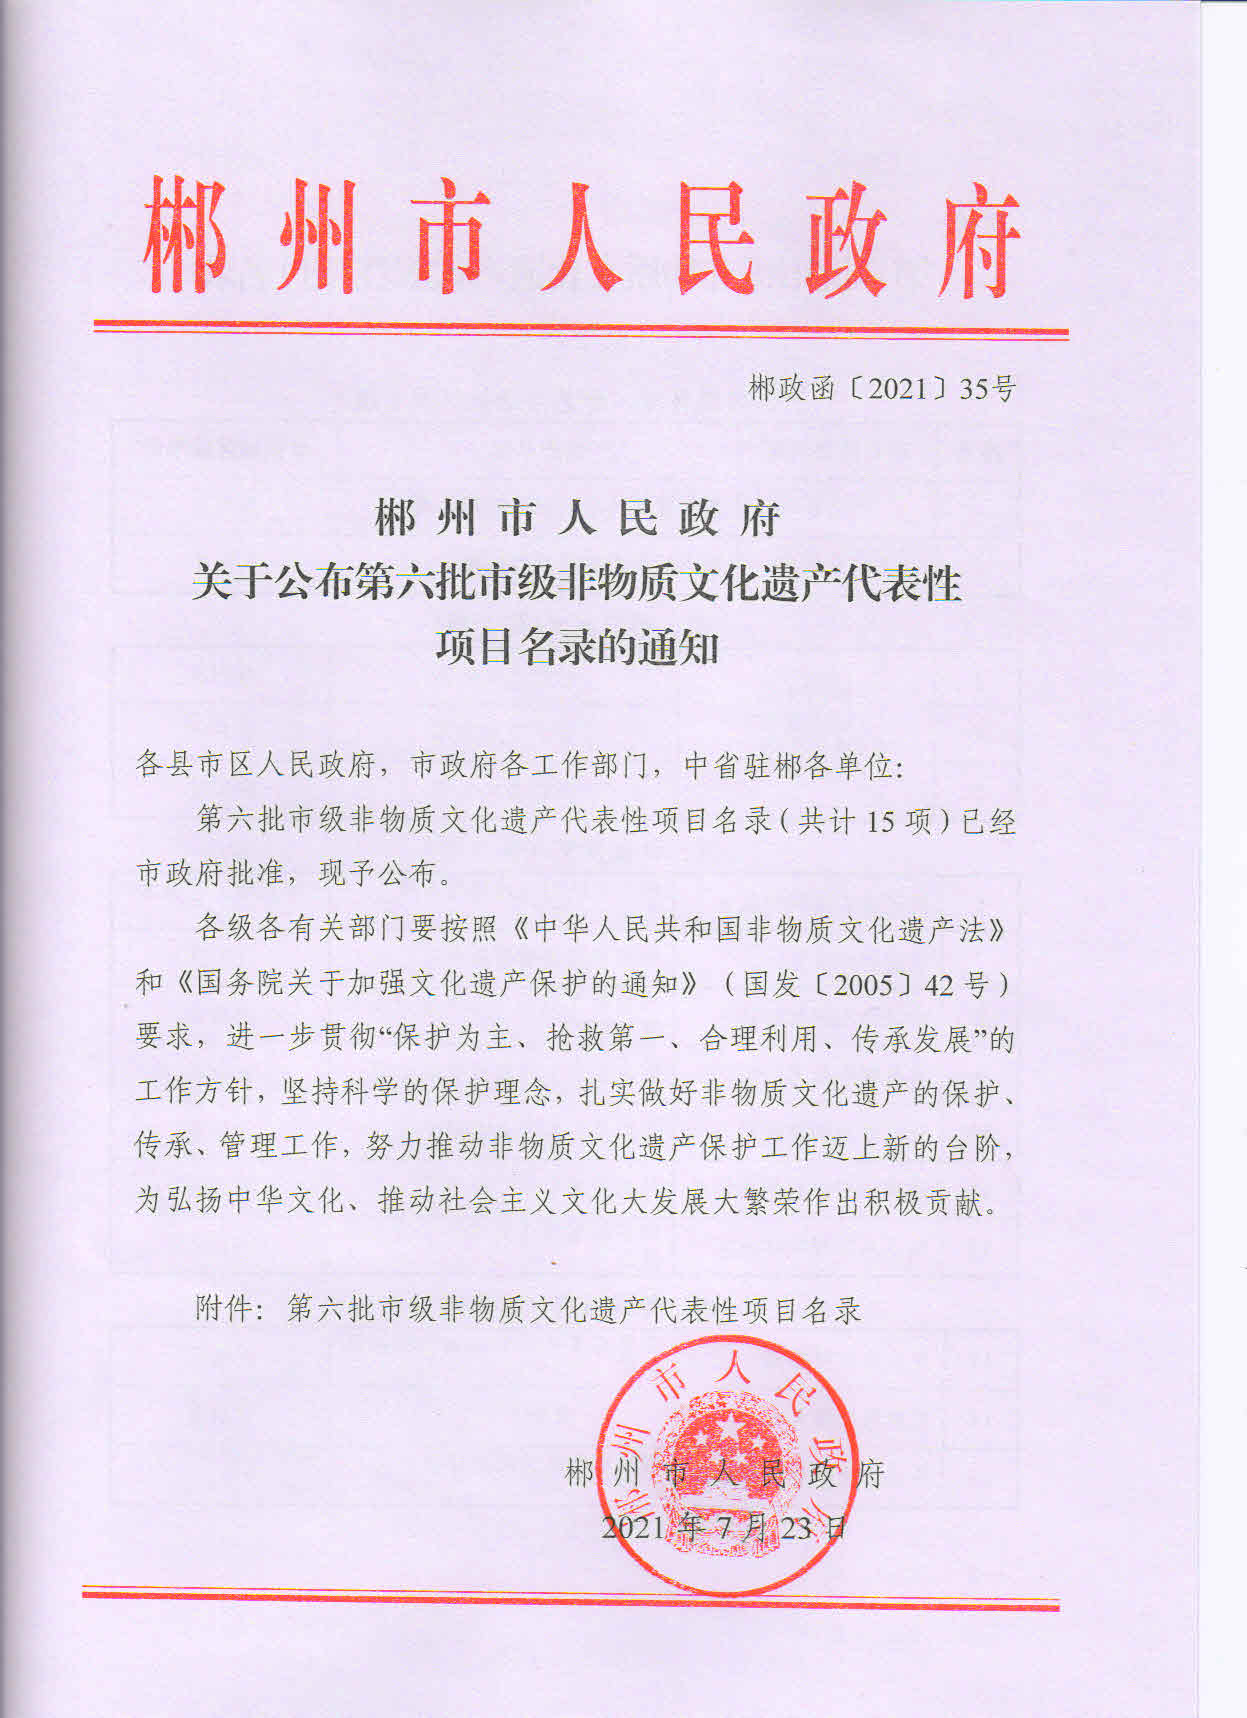 郴州市人民政府关于公布第六批市级非遗代表性项目名录的通知(1)_页面_1.jpg